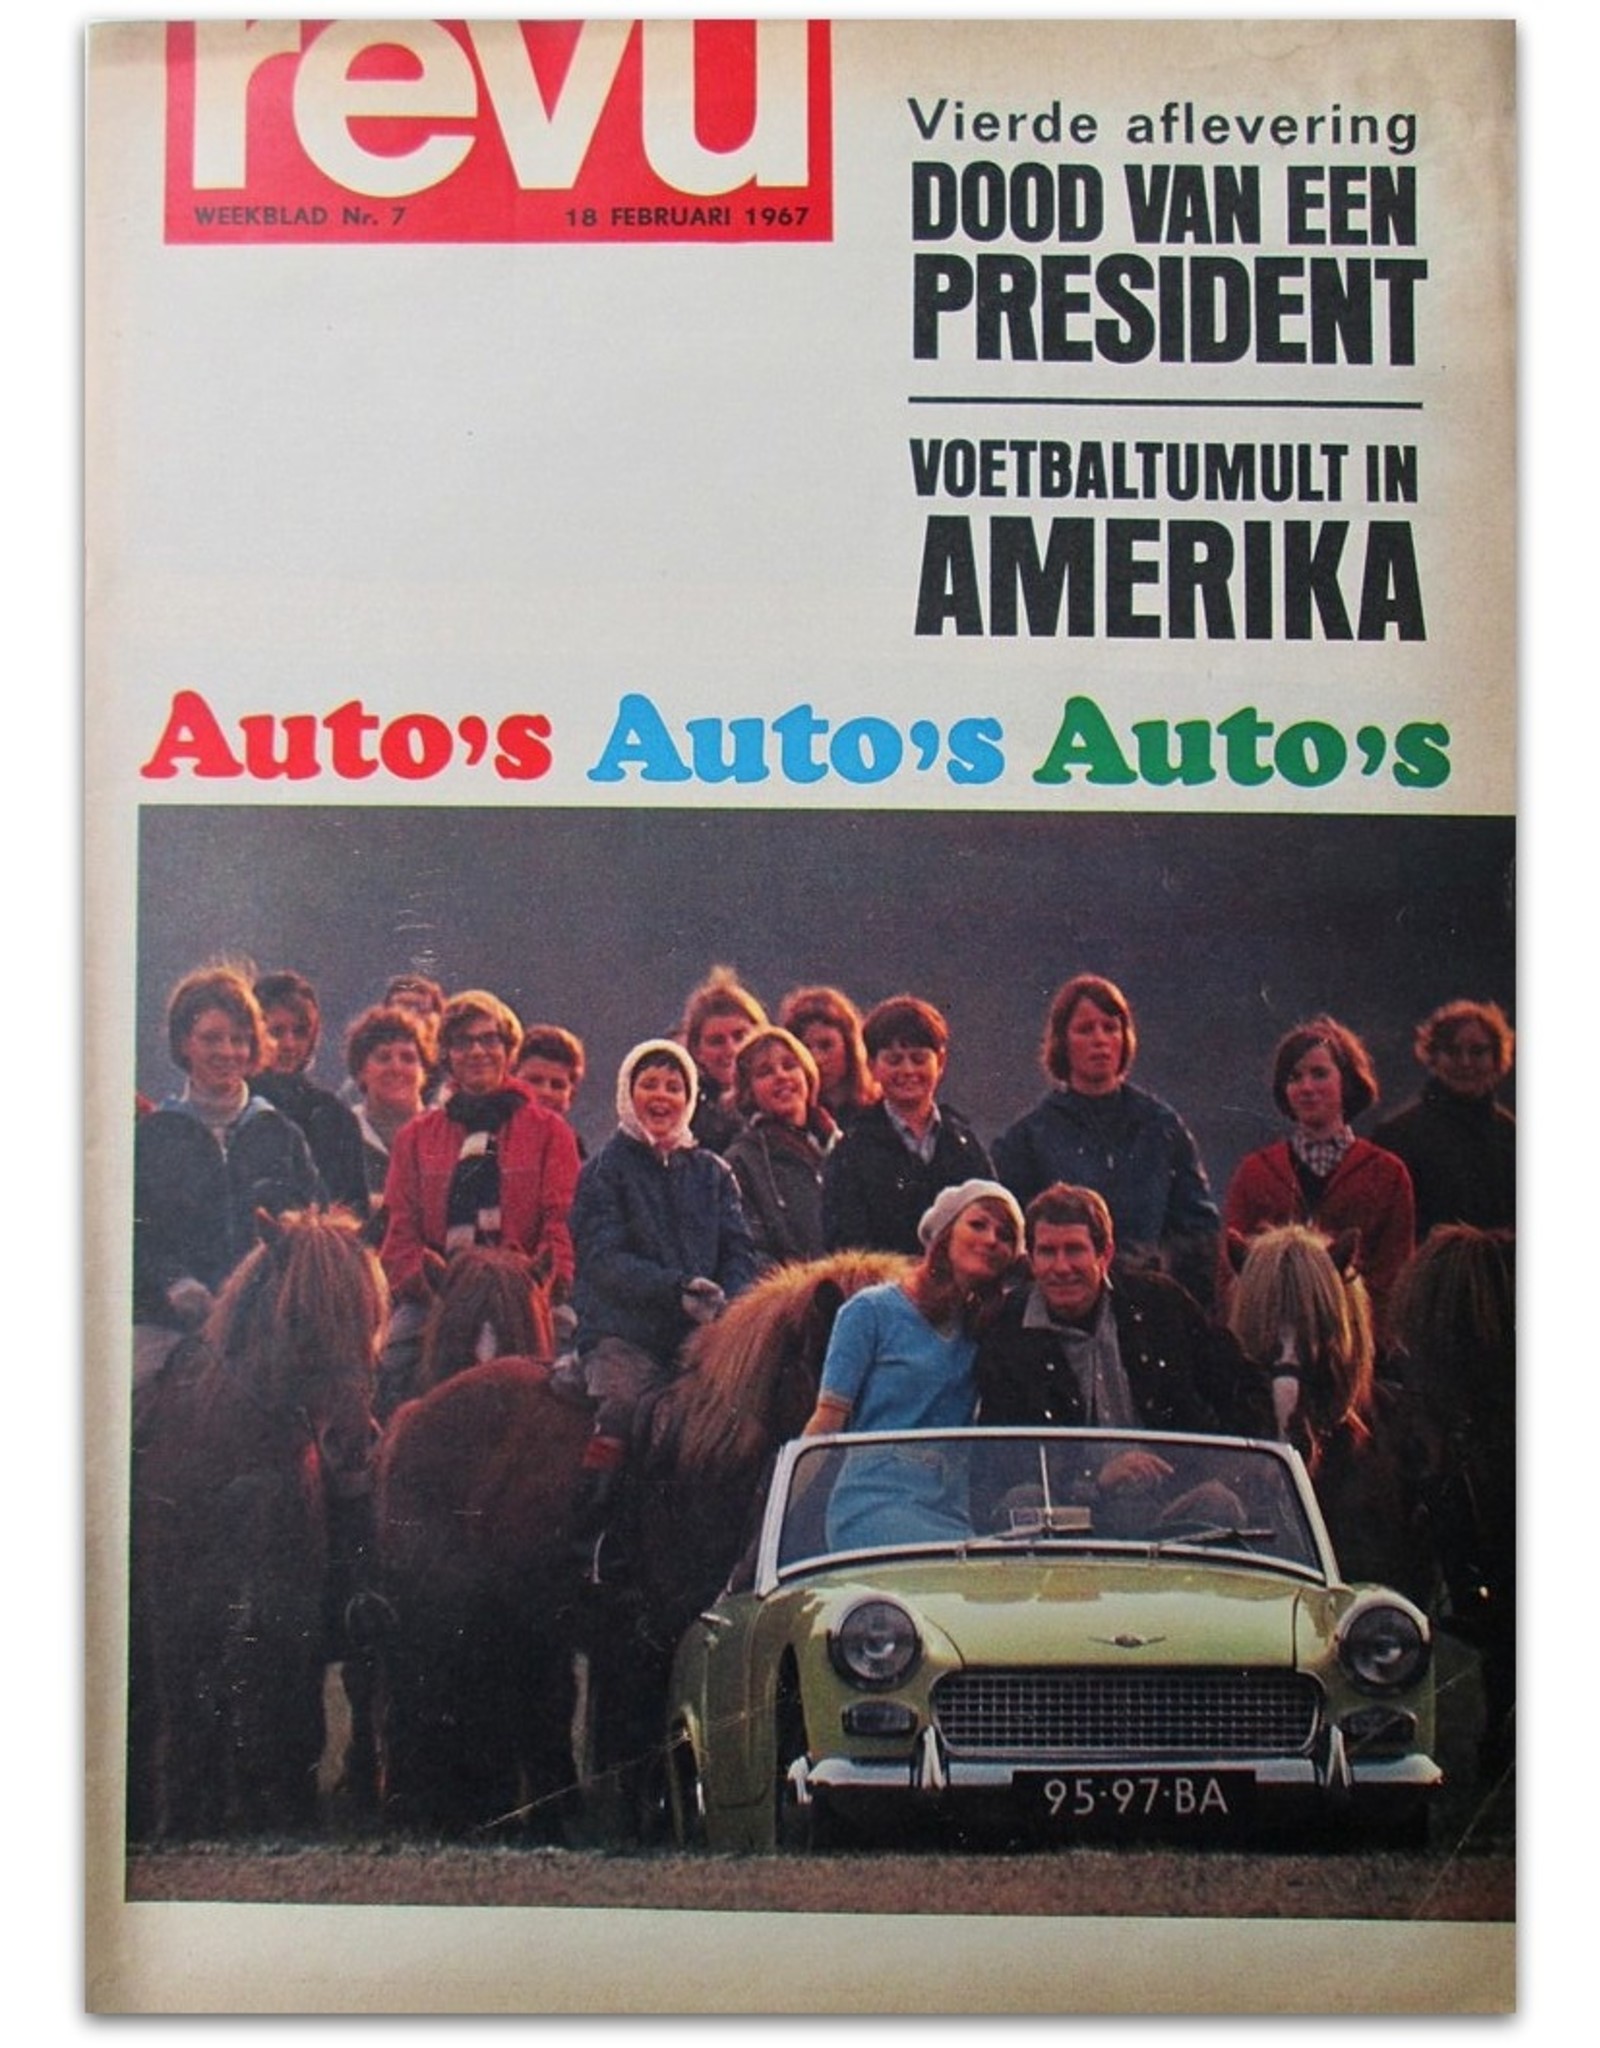 Ed van der Elsken - Auto's Auto's Auto's [report  in: Revu. Weekblad Nr. 7 - Februari 1967]